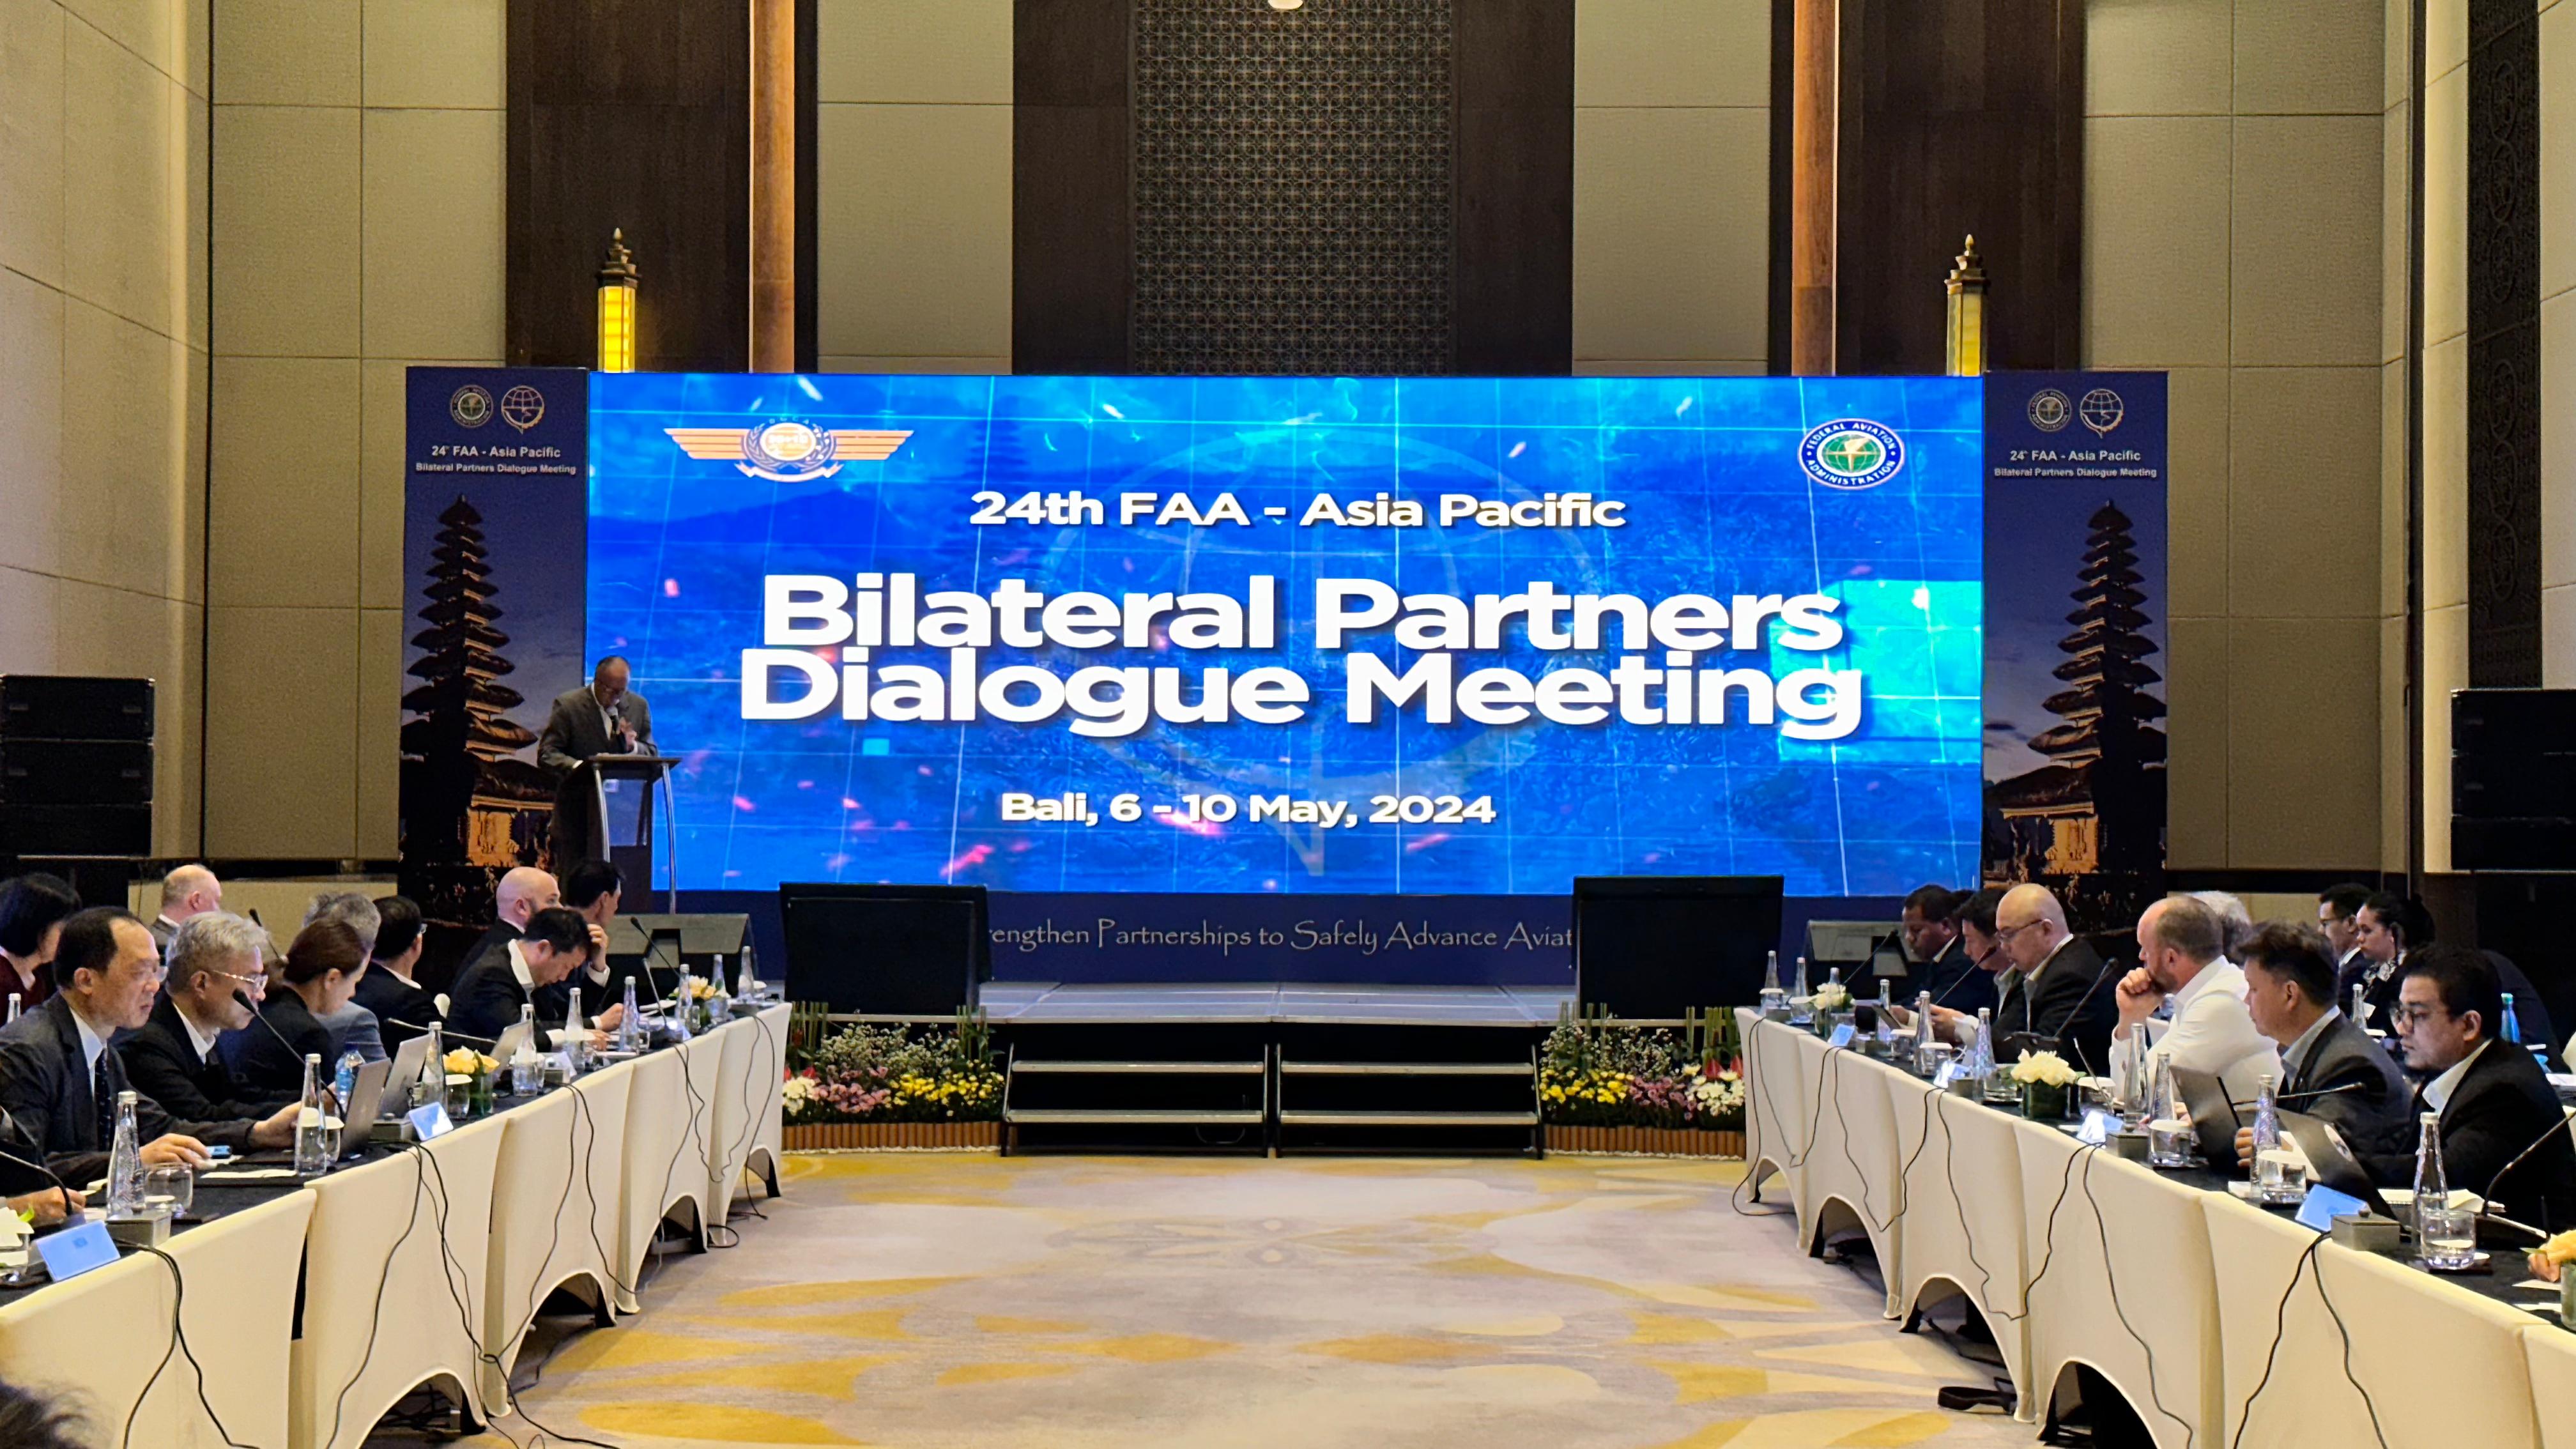 Gambar Artikel Tiga Belas Negara Asia Pasifik Hadiri 24th FAA - Asia Pacific Bilateral Partners Dialogue Meeting di Bali Bahas Regulasi, Teknologi dan Perkembangan Keselamatan Penerbangan